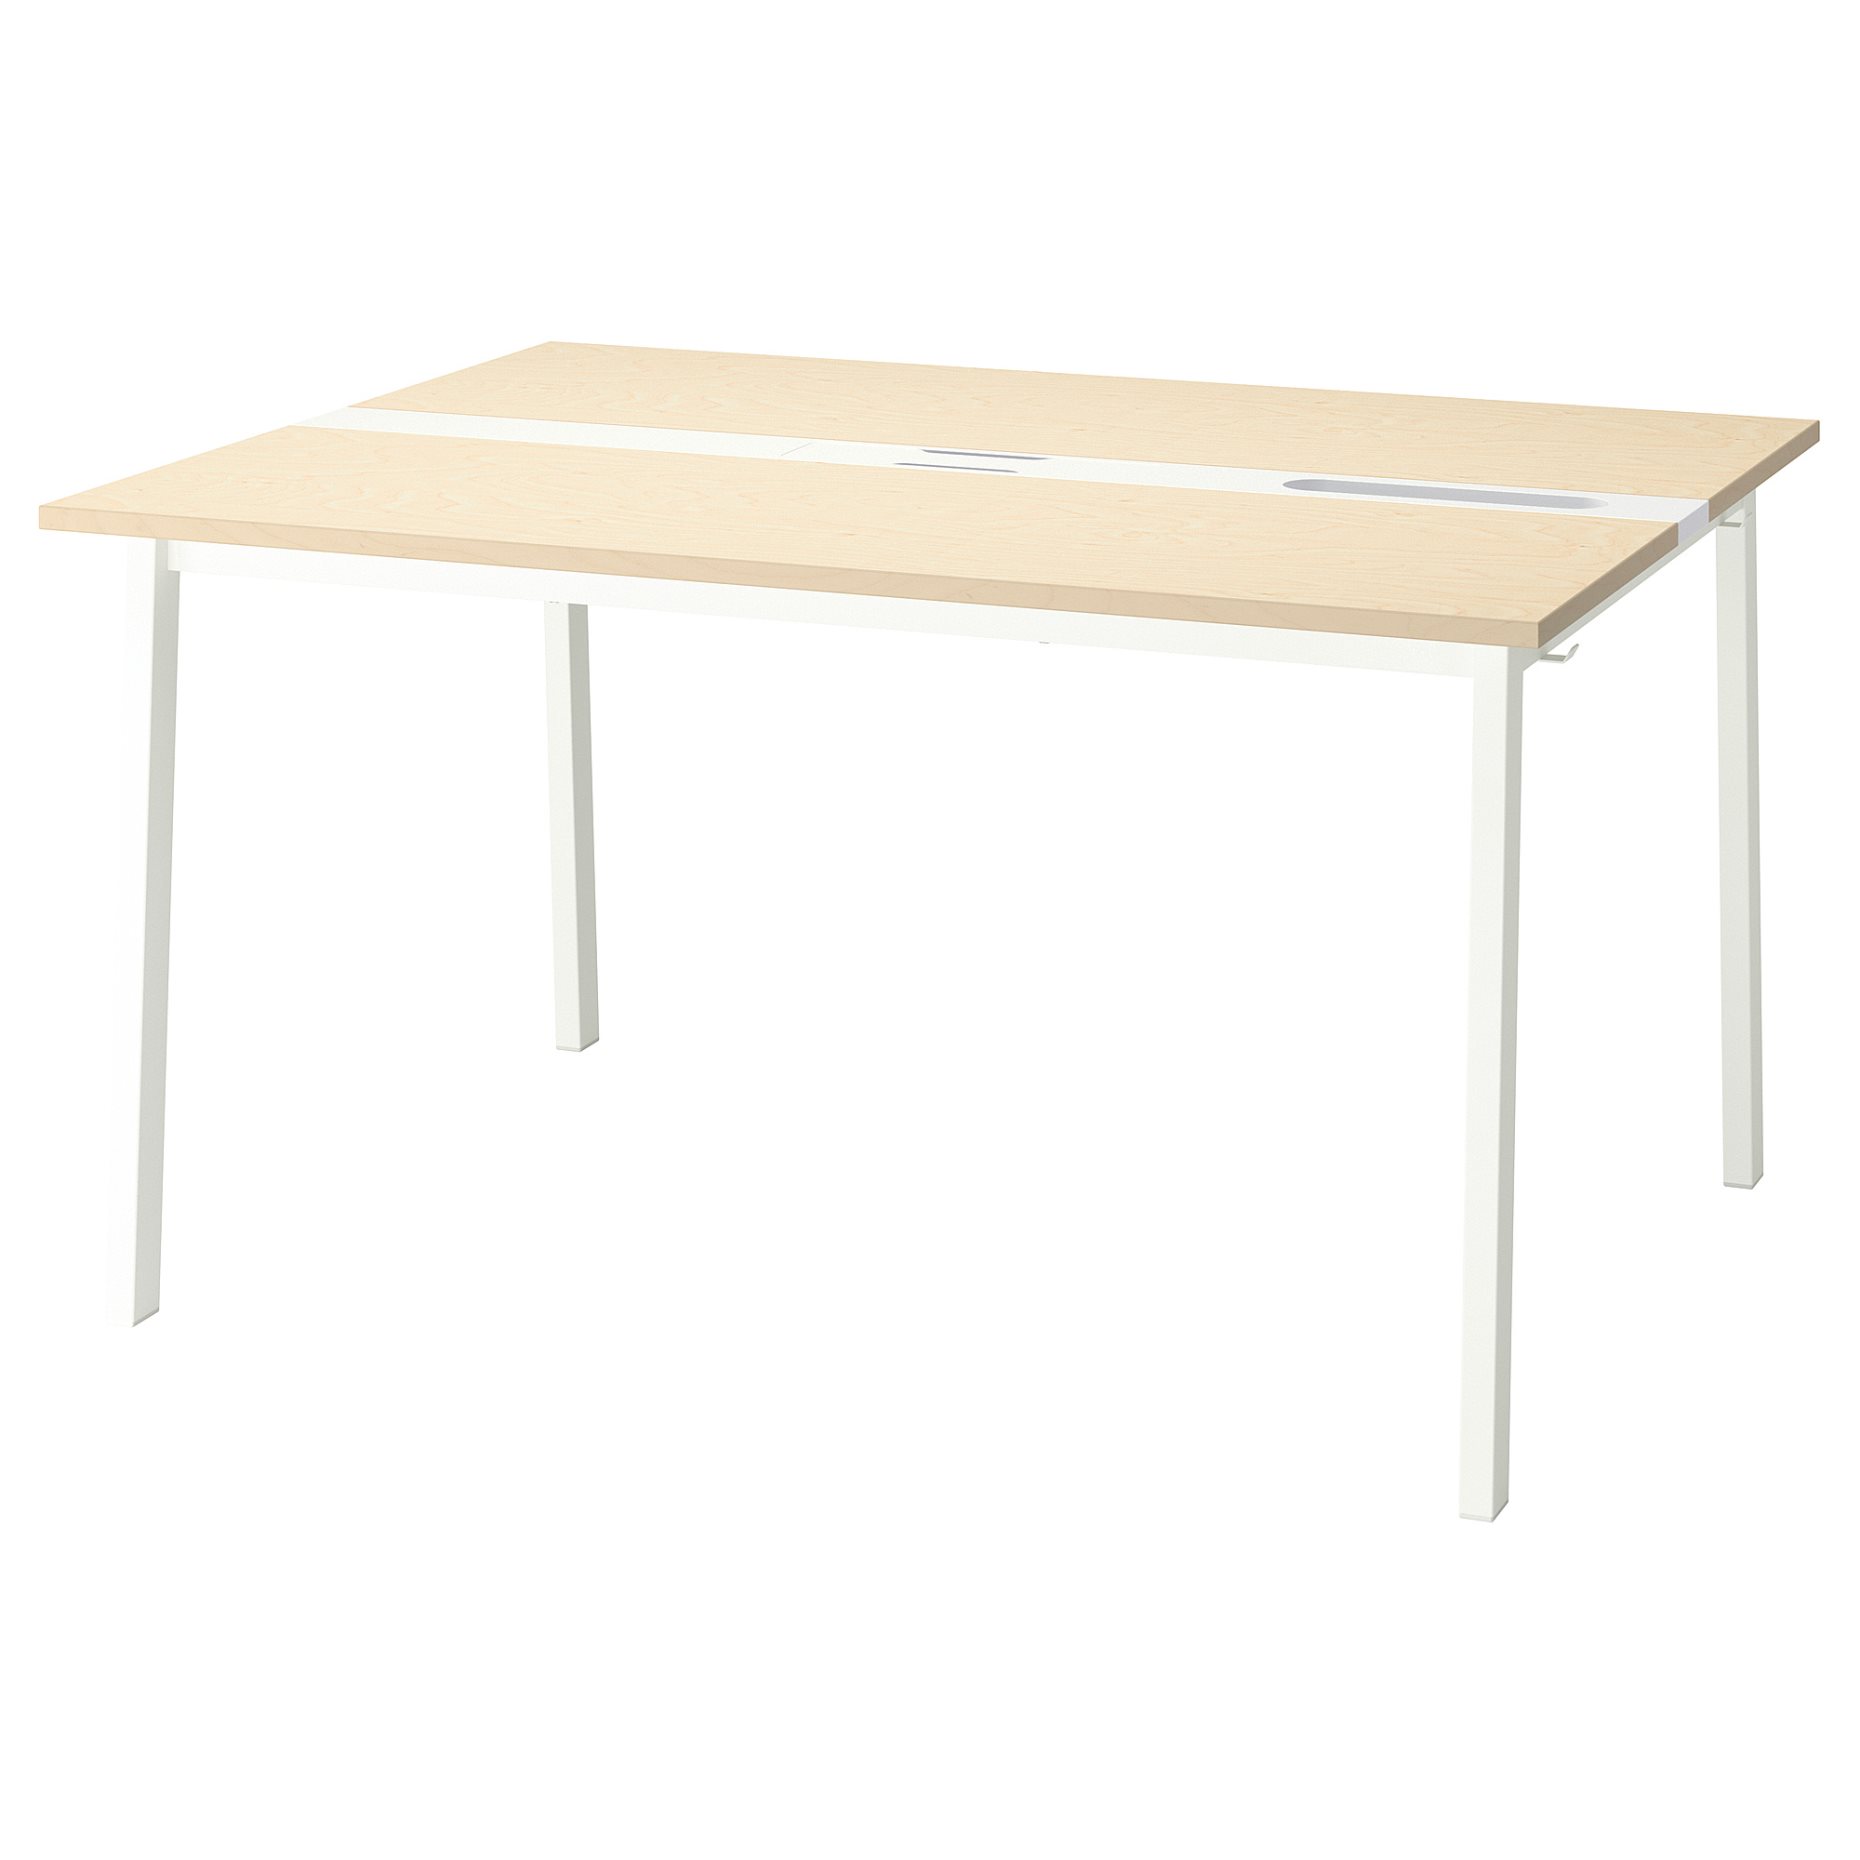 MITTZON, table top, 140x48 cm, 005.277.90